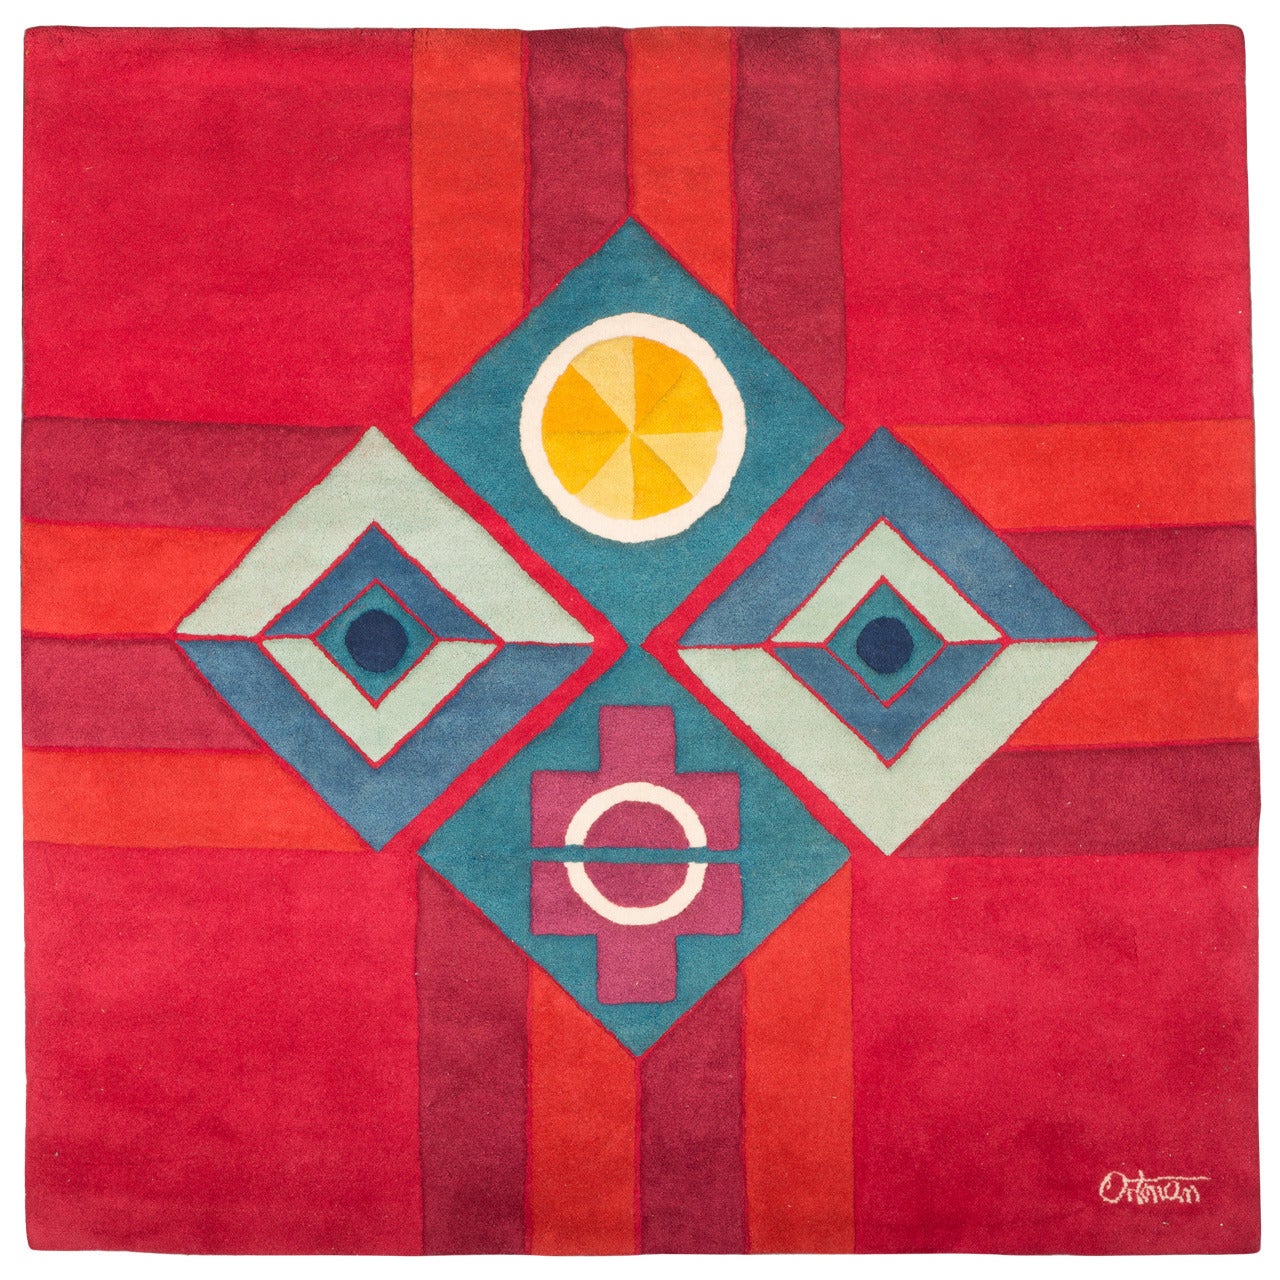 George Ortman Handwoven Wool Tapestry, "Seeing Is Believing"